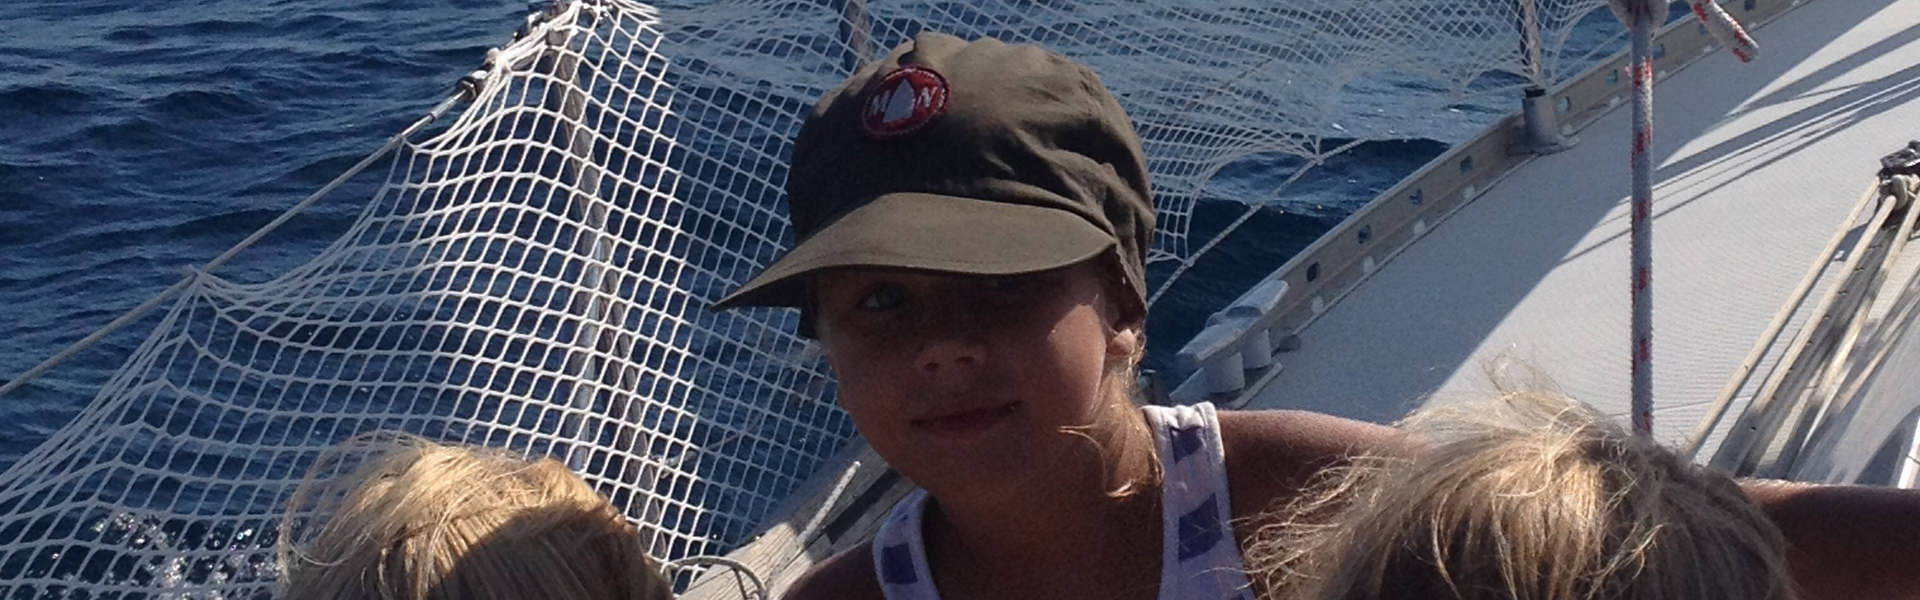 famiglie con bambini vacanze crociere barca a vela in croazia